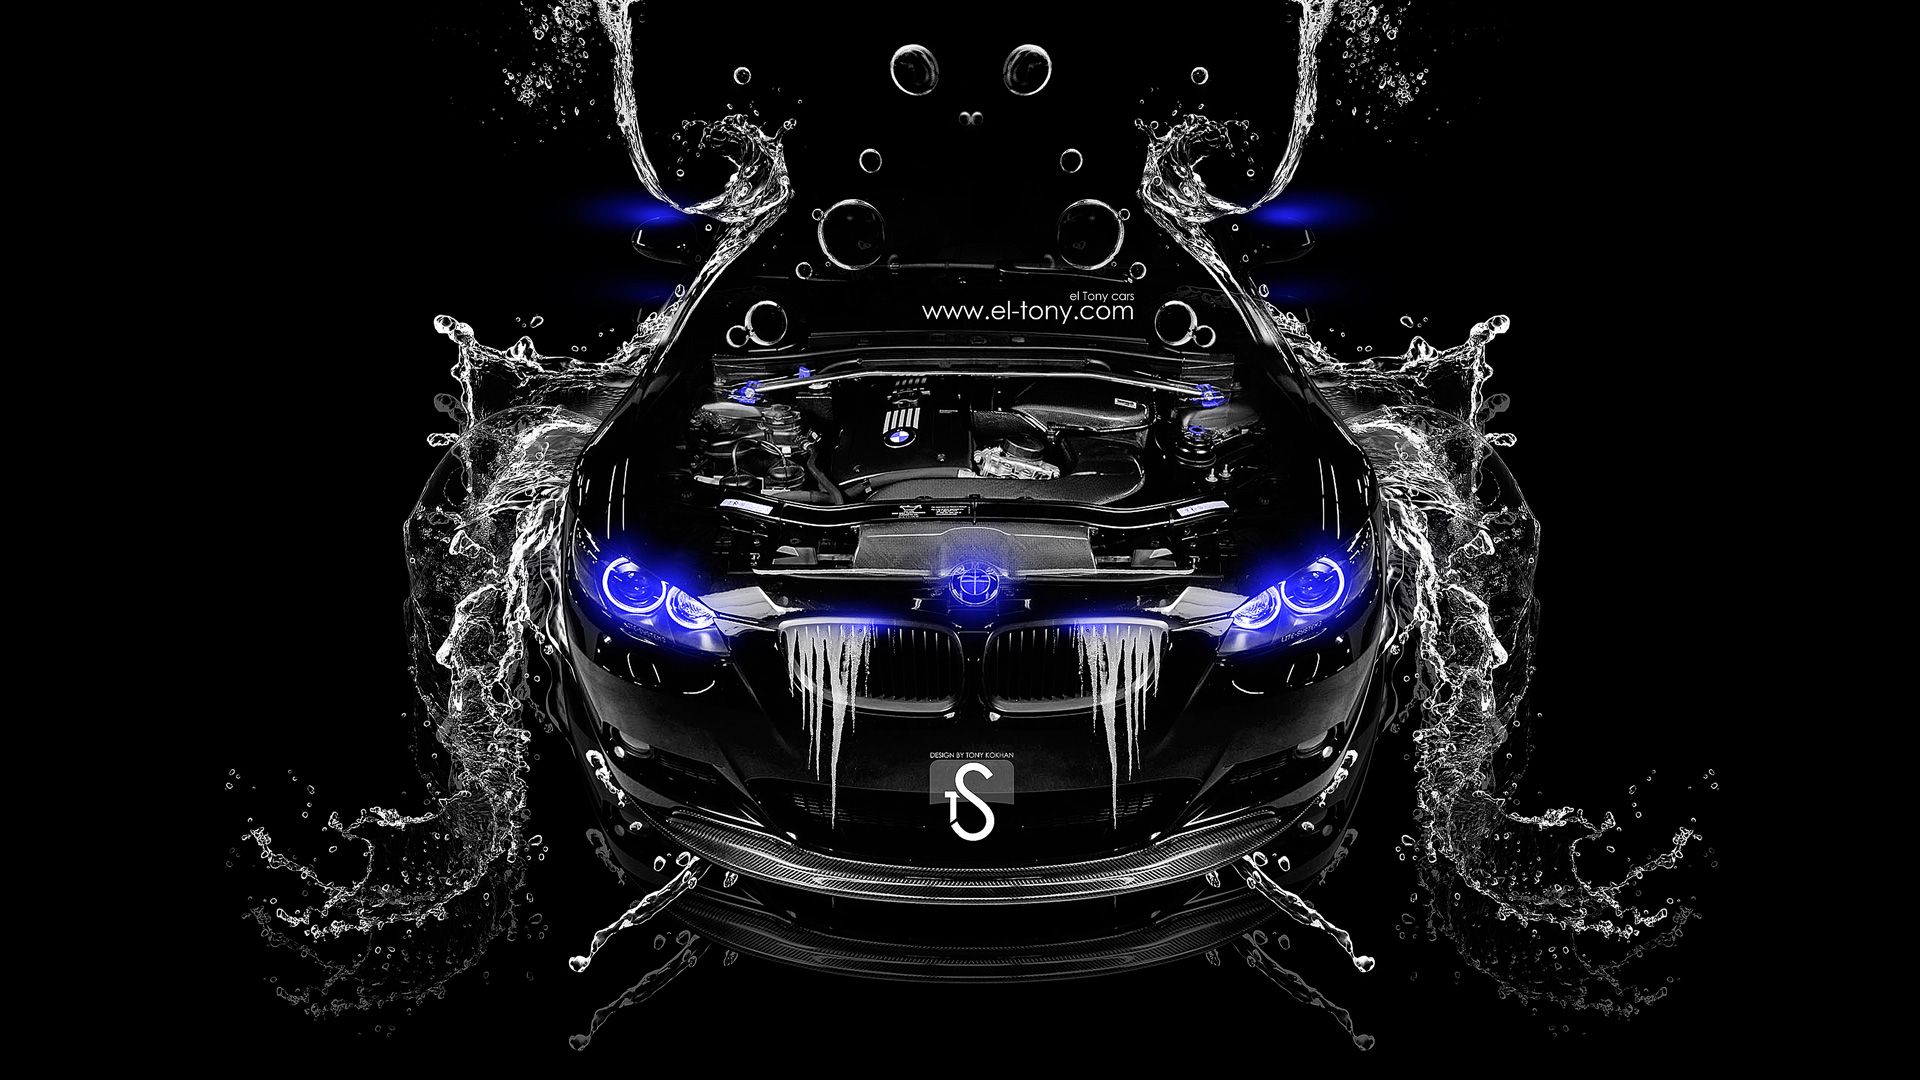 BMW M3 Water Engine 2014 El Tony. El Tonyel Tony.com